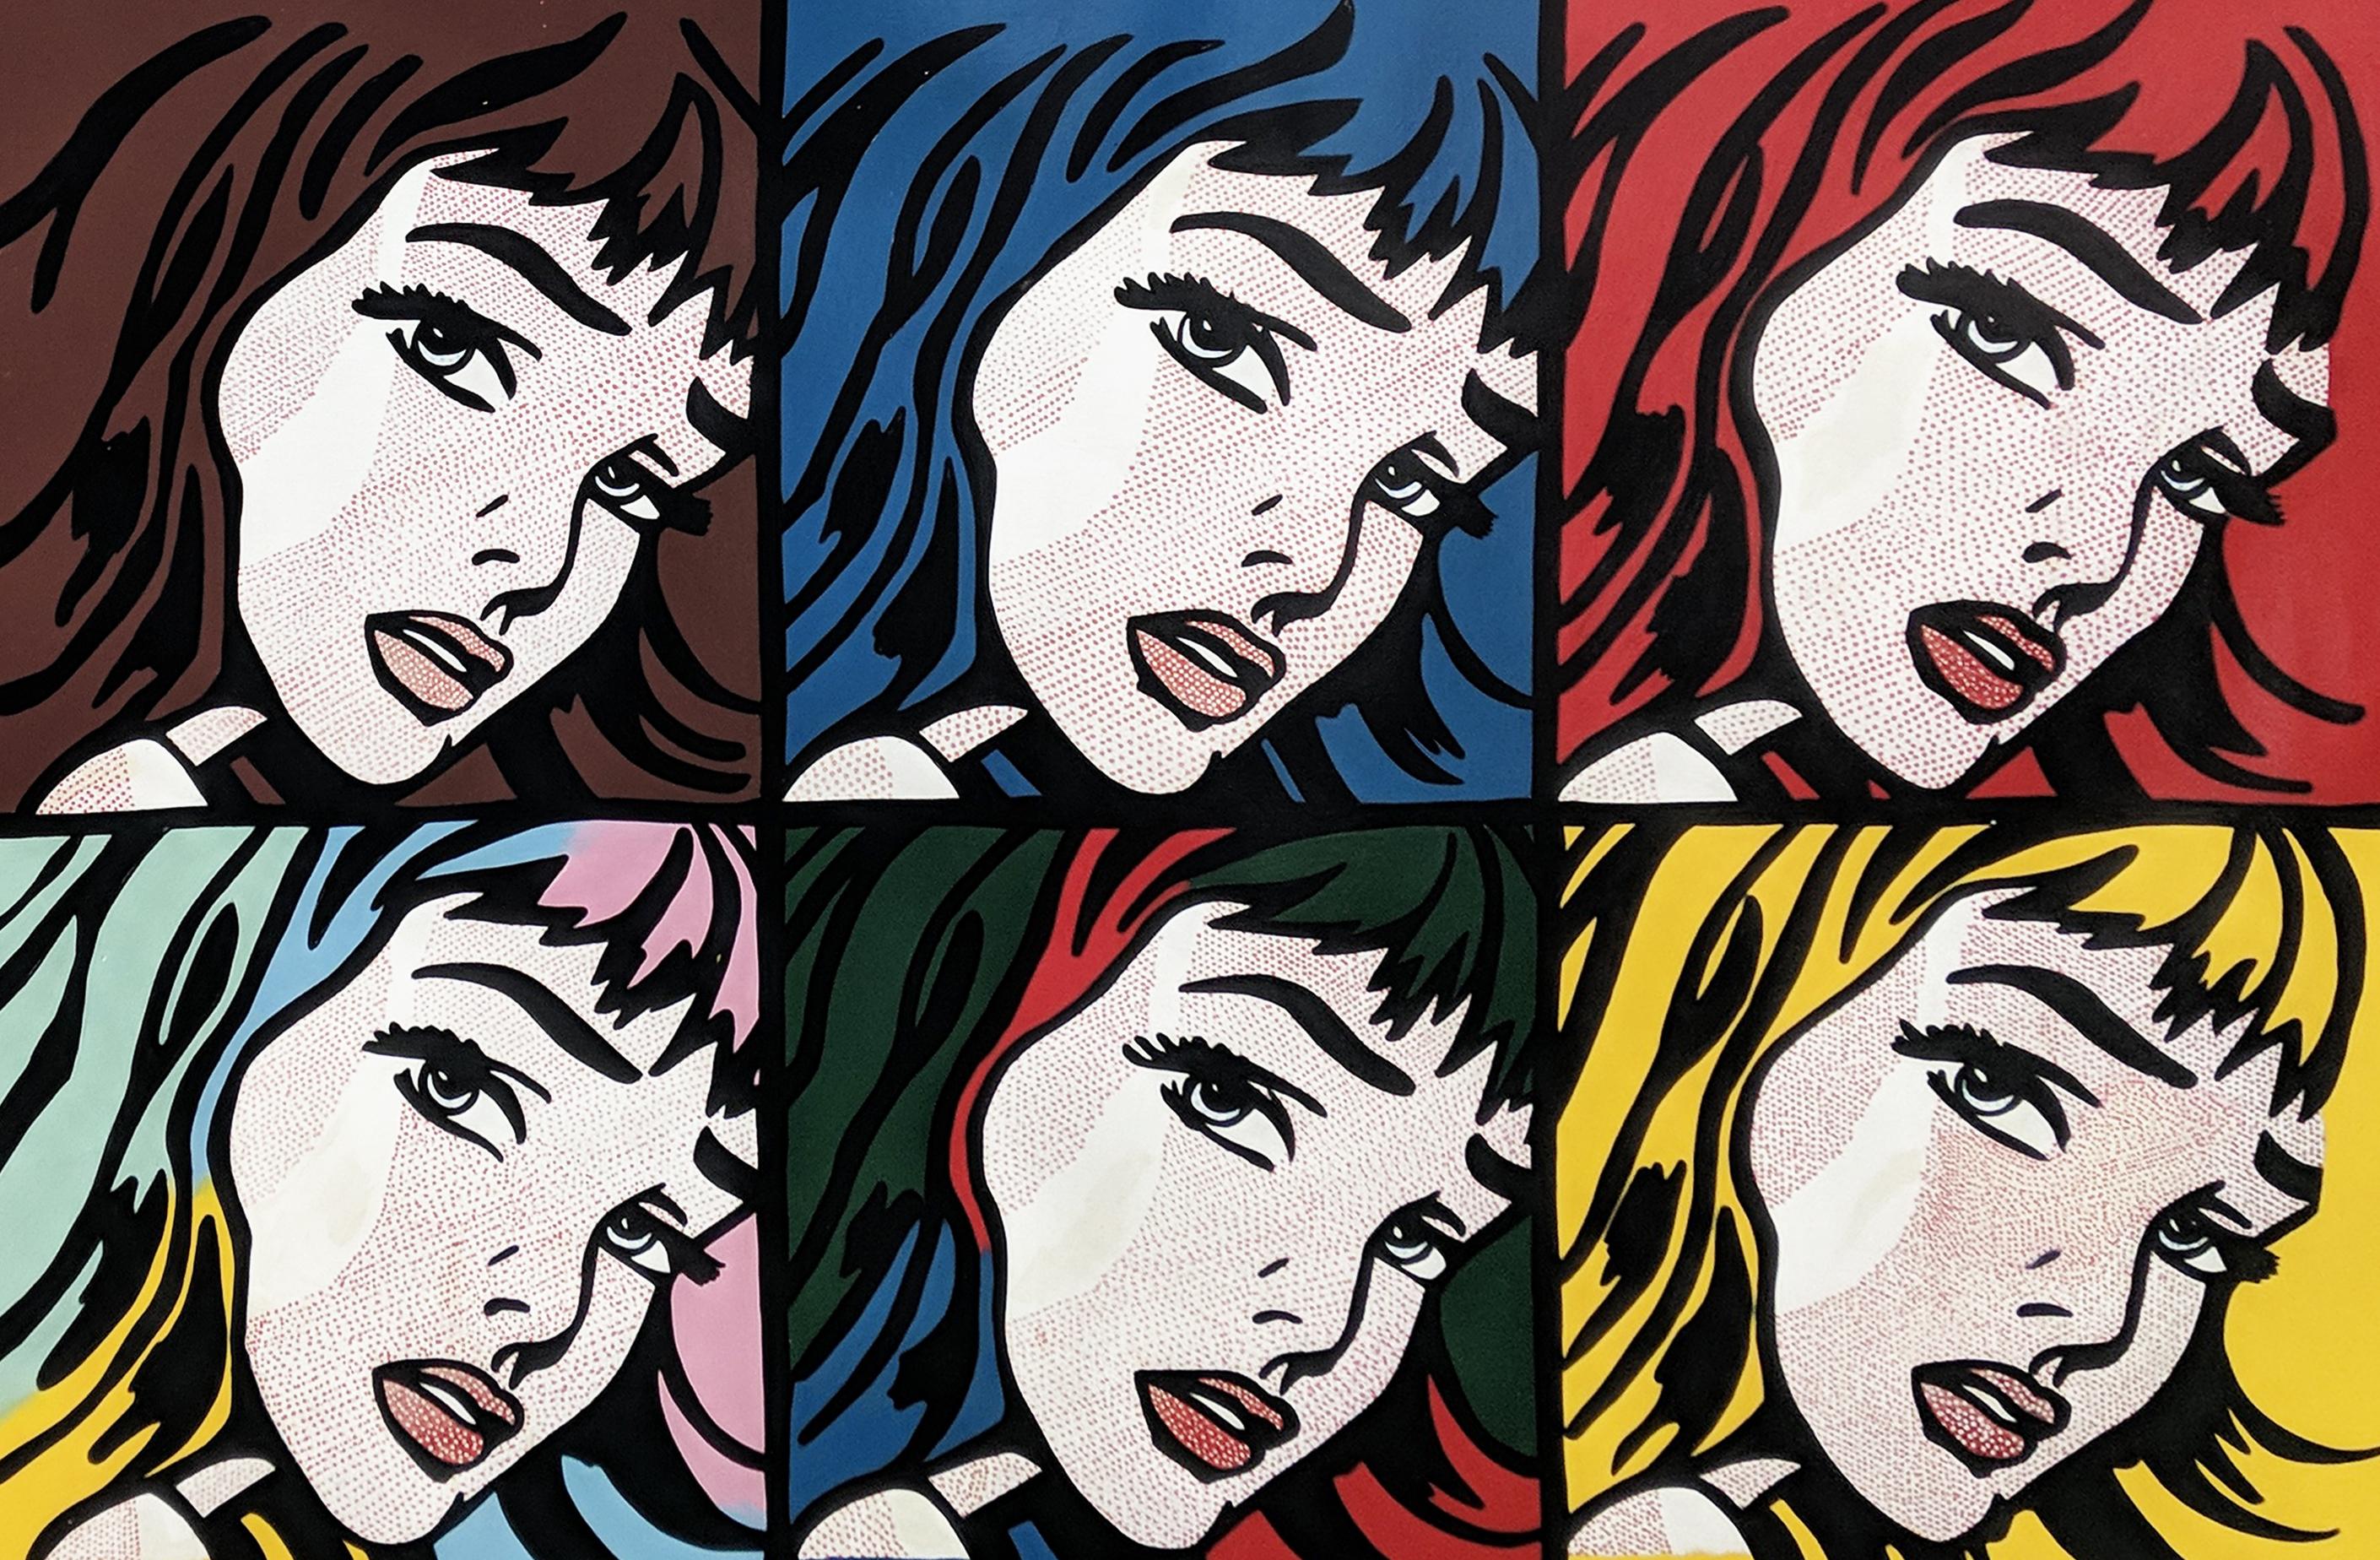 Why was Roy Lichtenstein famous?